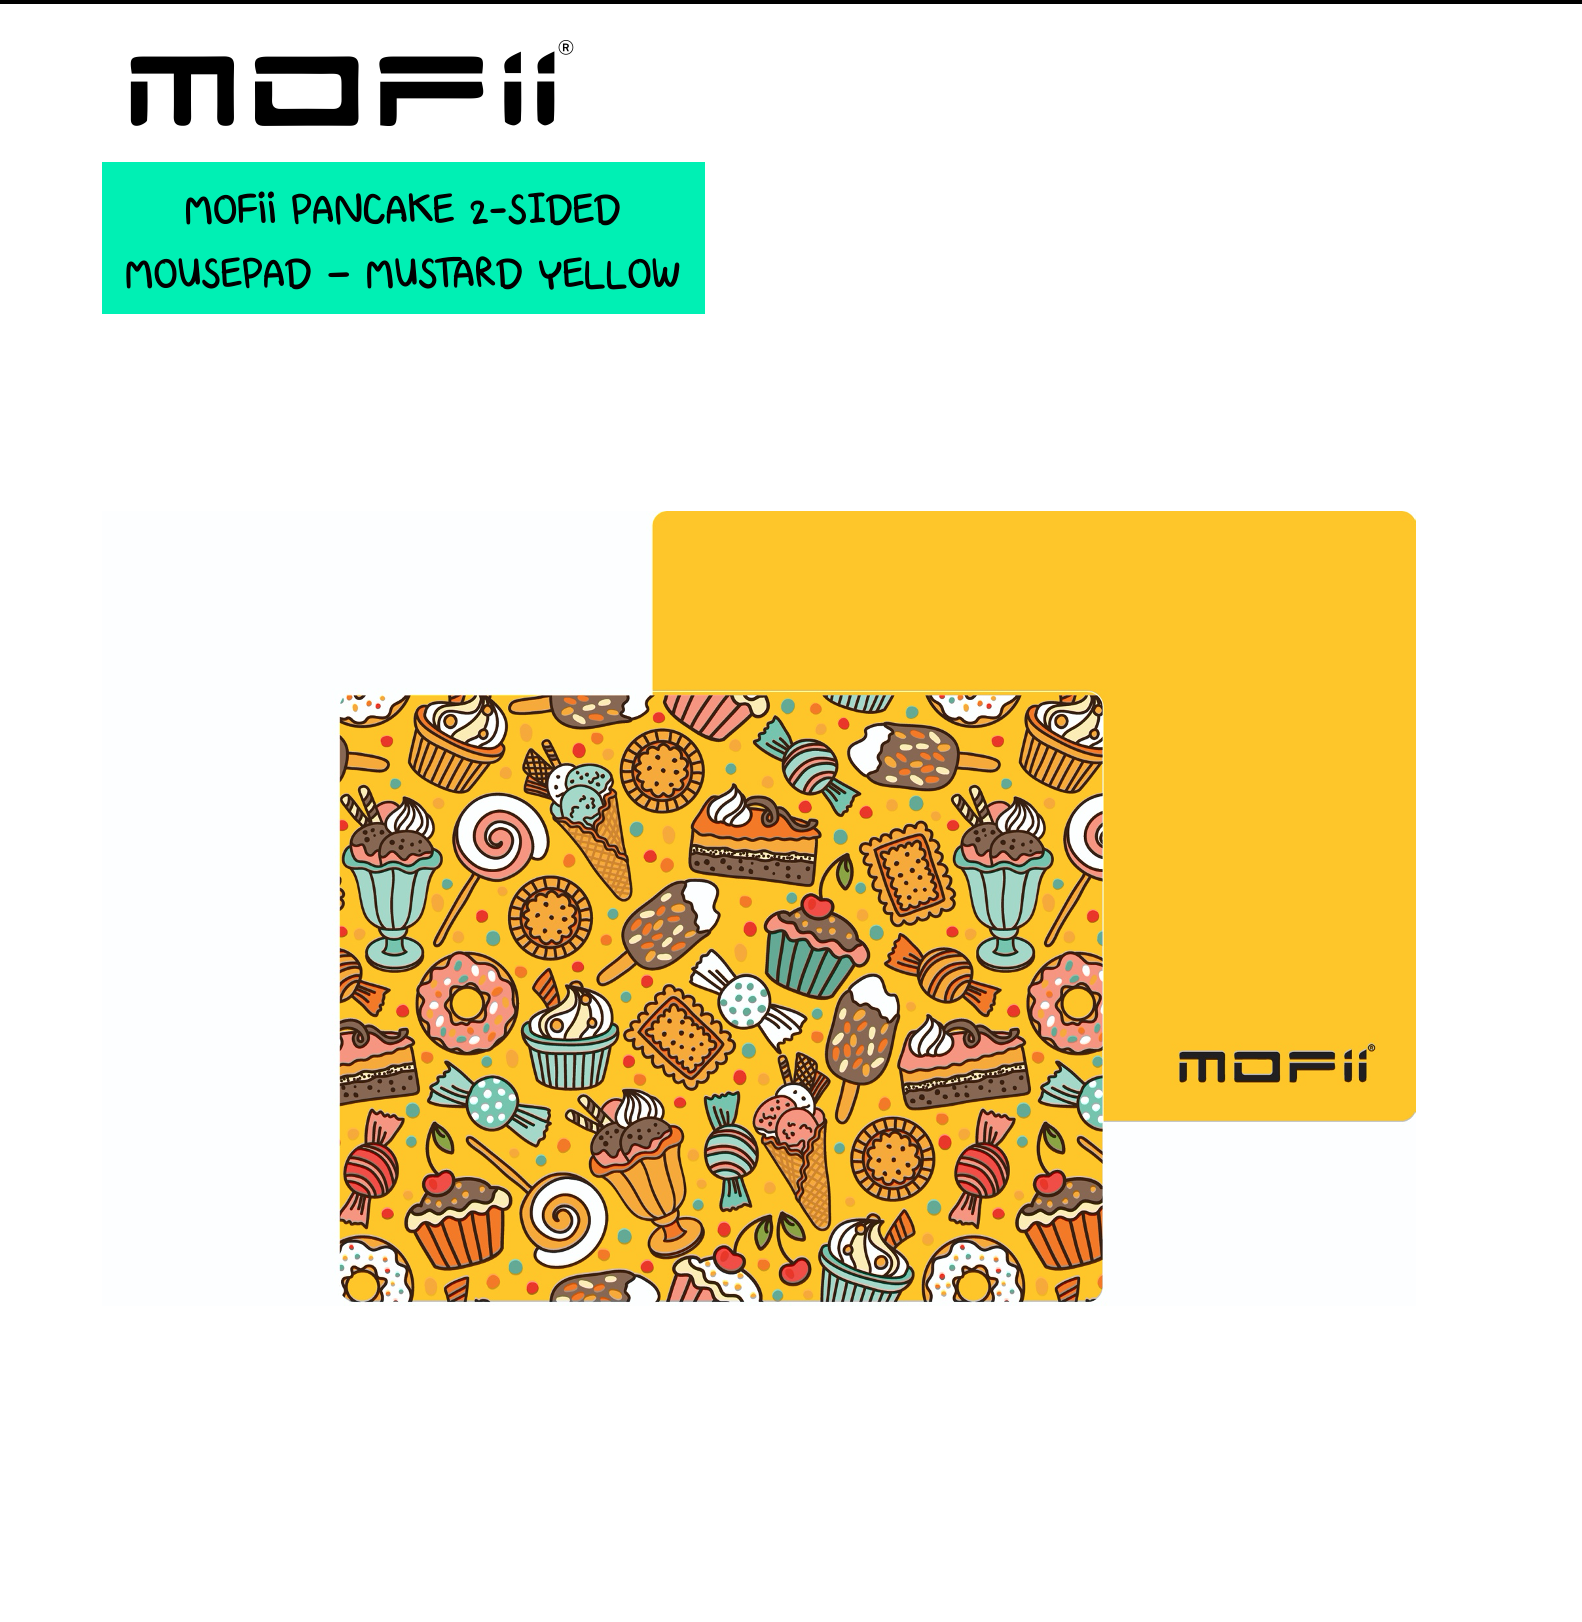 (แผ่นรองเม้าส์2ด้านแบบสั้น) MOFii PANCAKE 2-Sided Small Mouse Pad